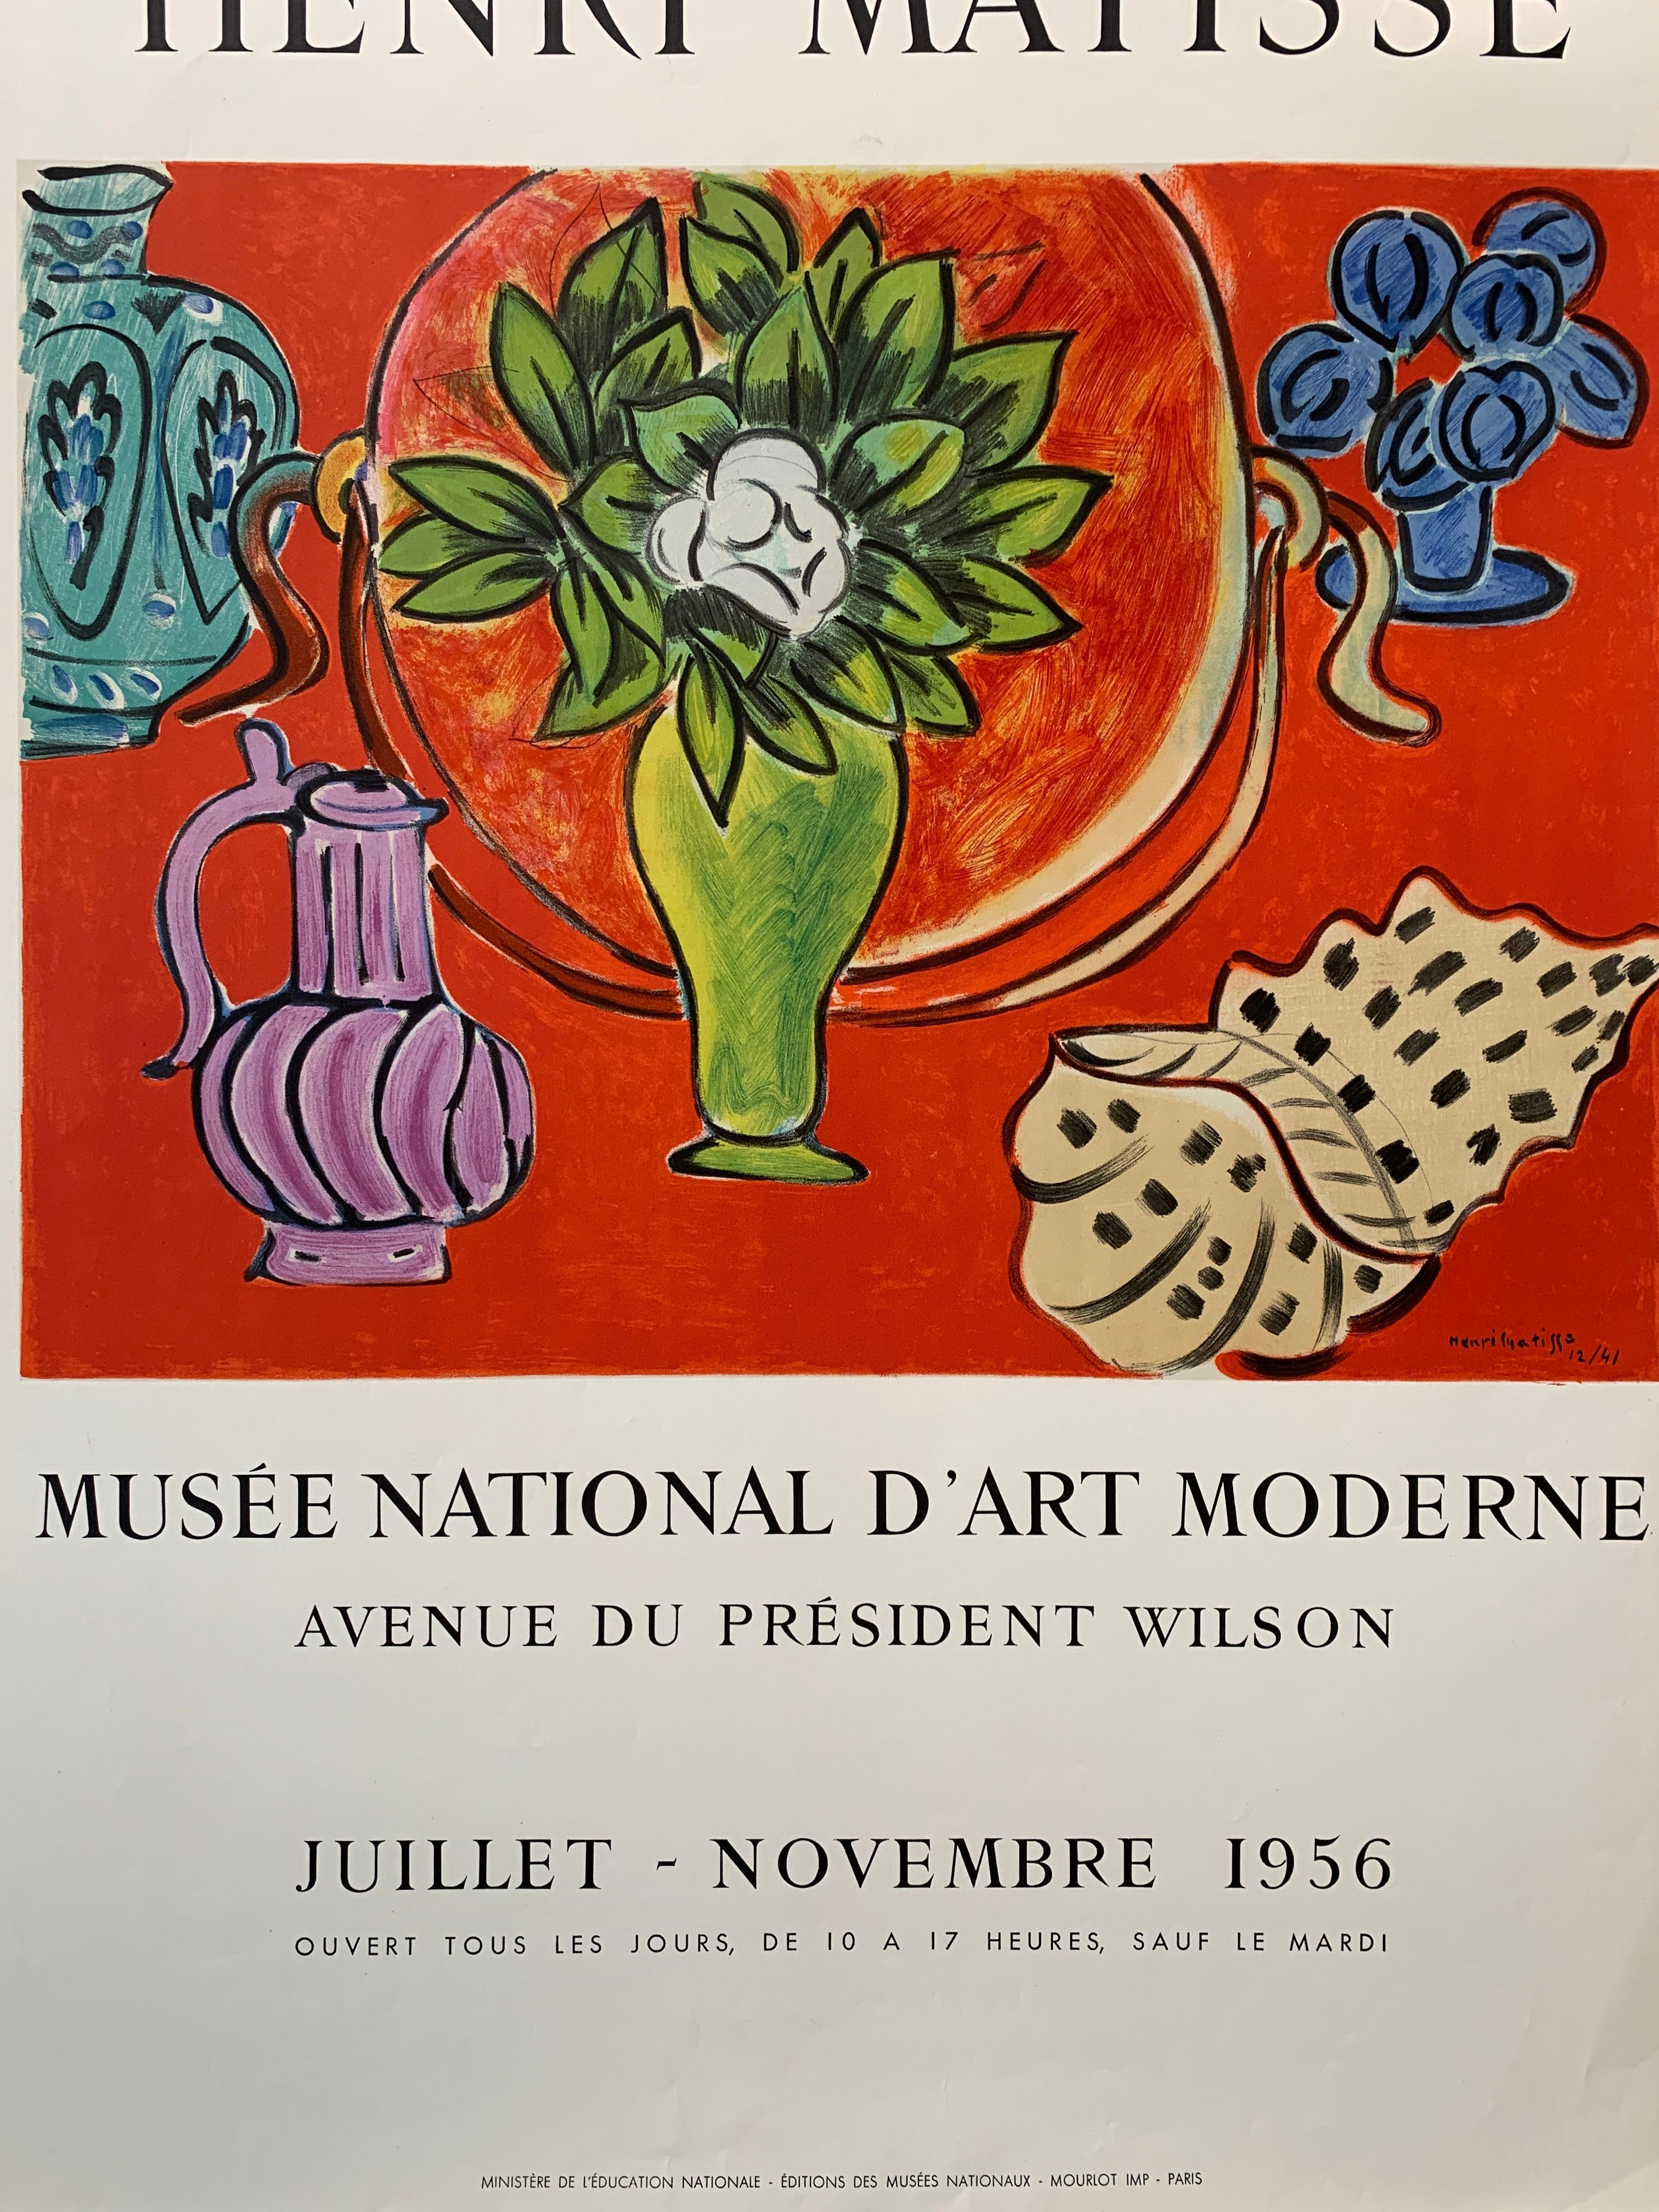 Henri Matisse, 'Musee National D’art Moderne' Original Exhibition Poster, 1956 For Sale 2